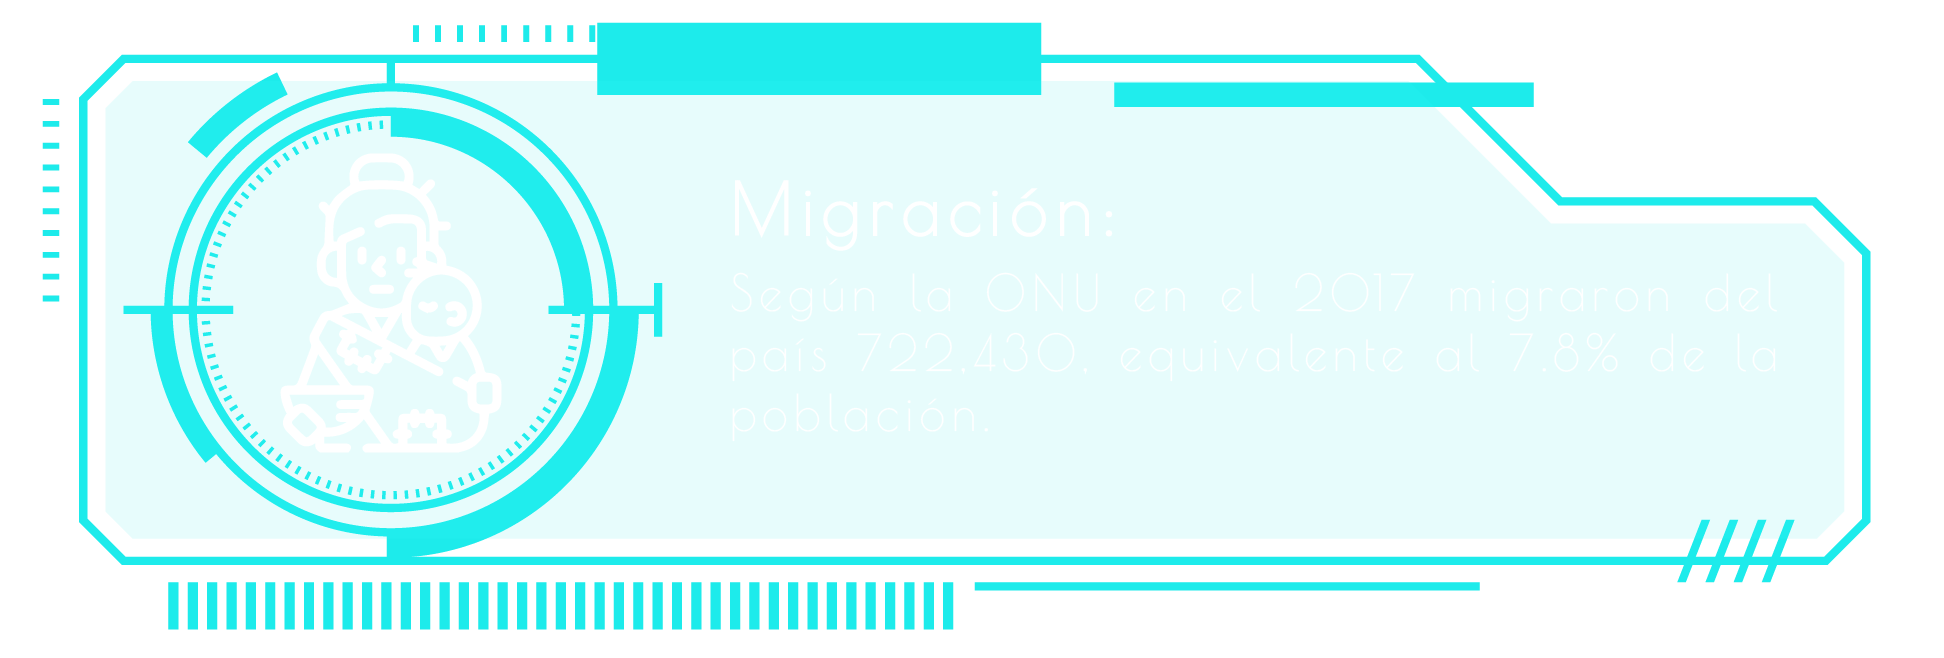 migracion_texto-03